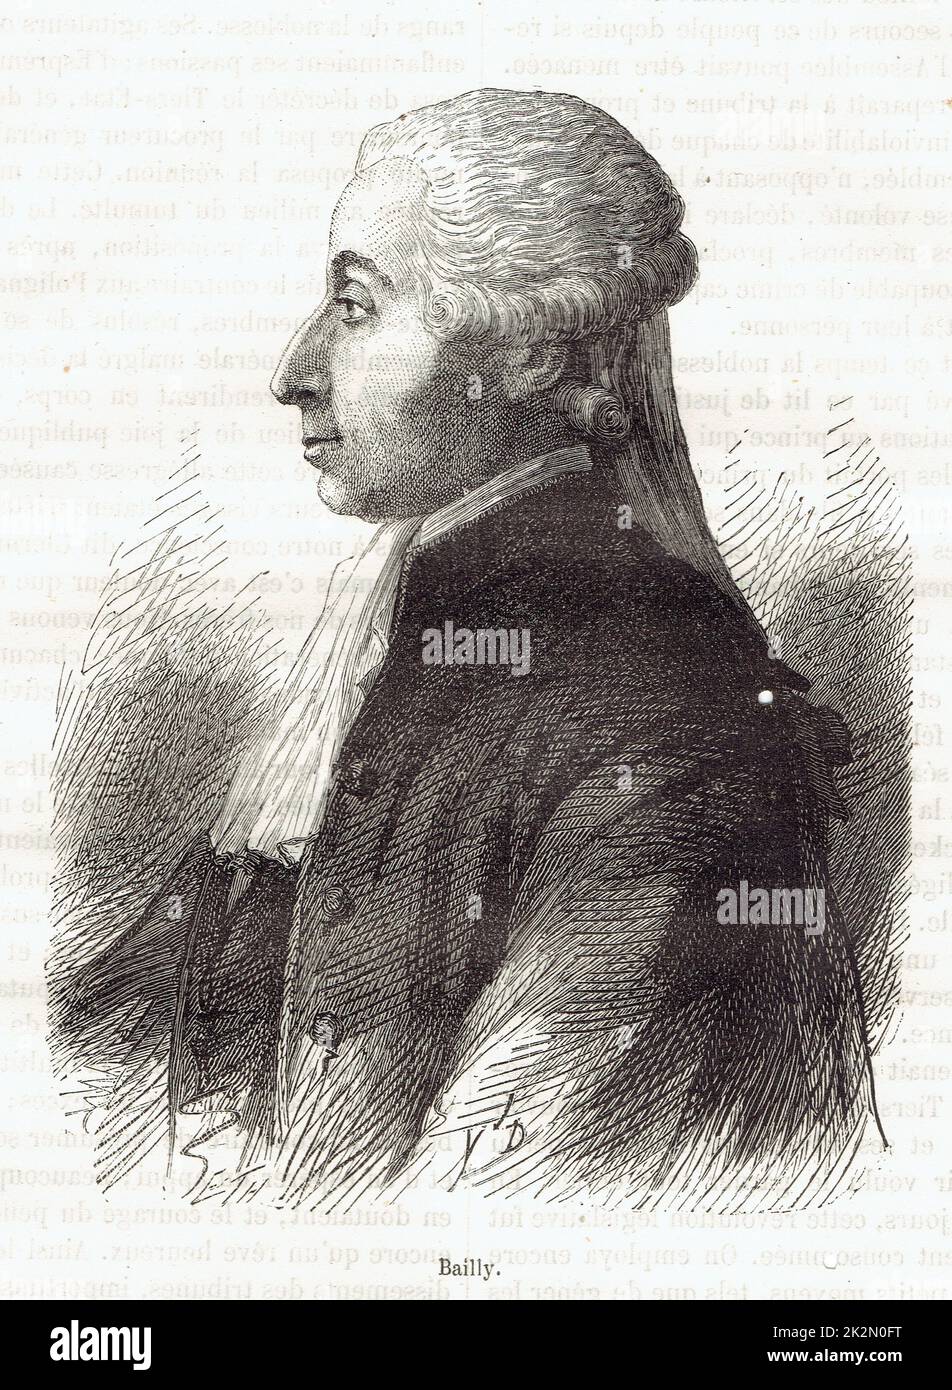 Bailly, mathématicien, astronome, académicien, écrivain. Il devient le premier maire de Paris lors de la Révolution française Stock Photo